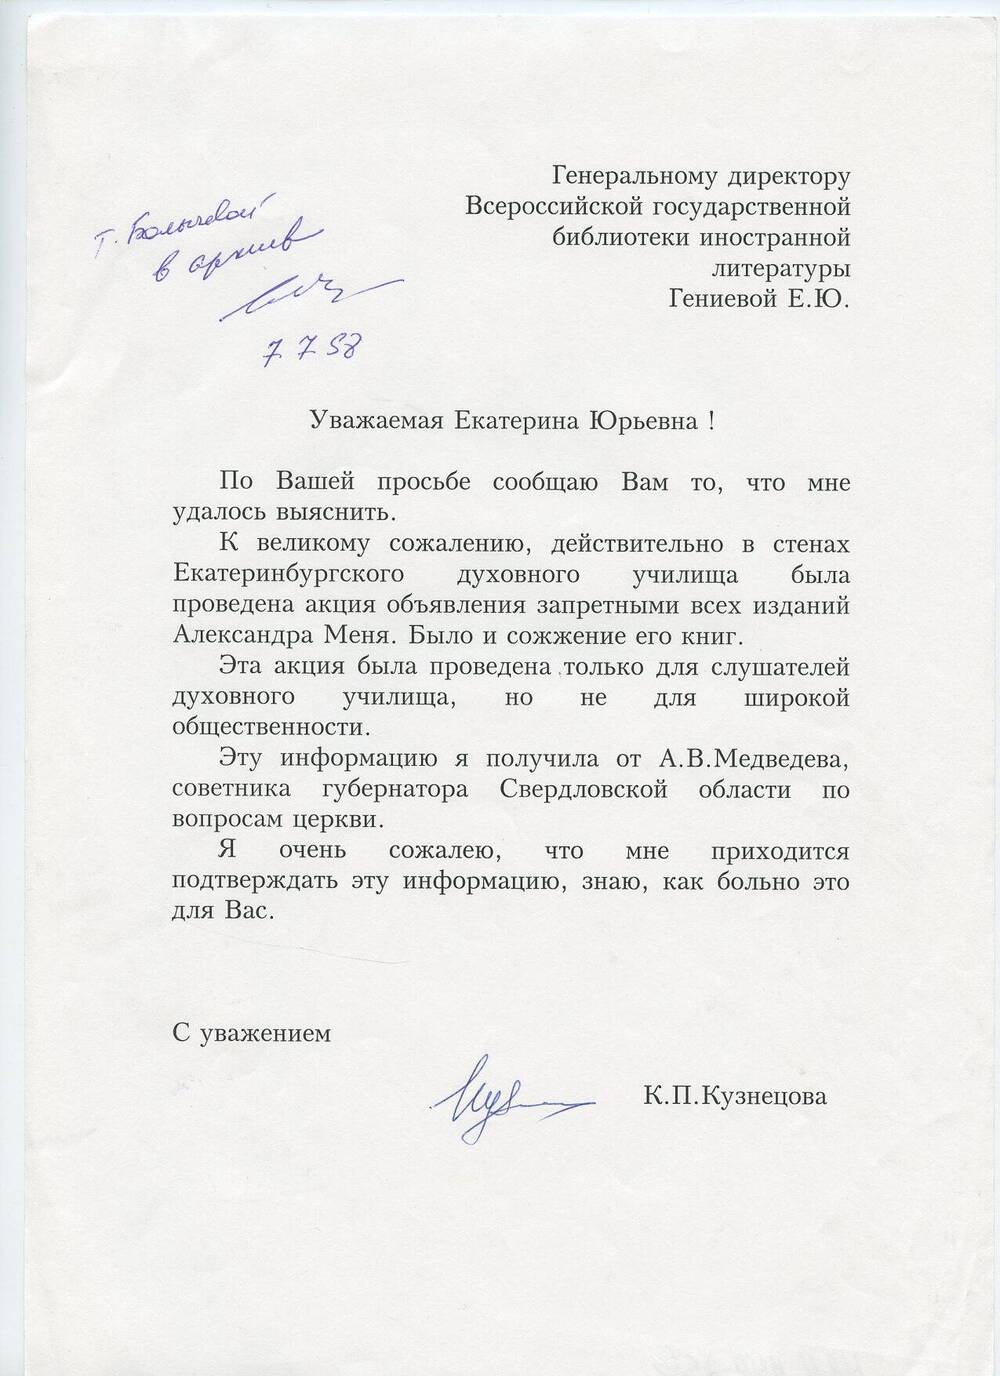 Письмо Е.Ю. Гениевой от К.П. Кузнецовой